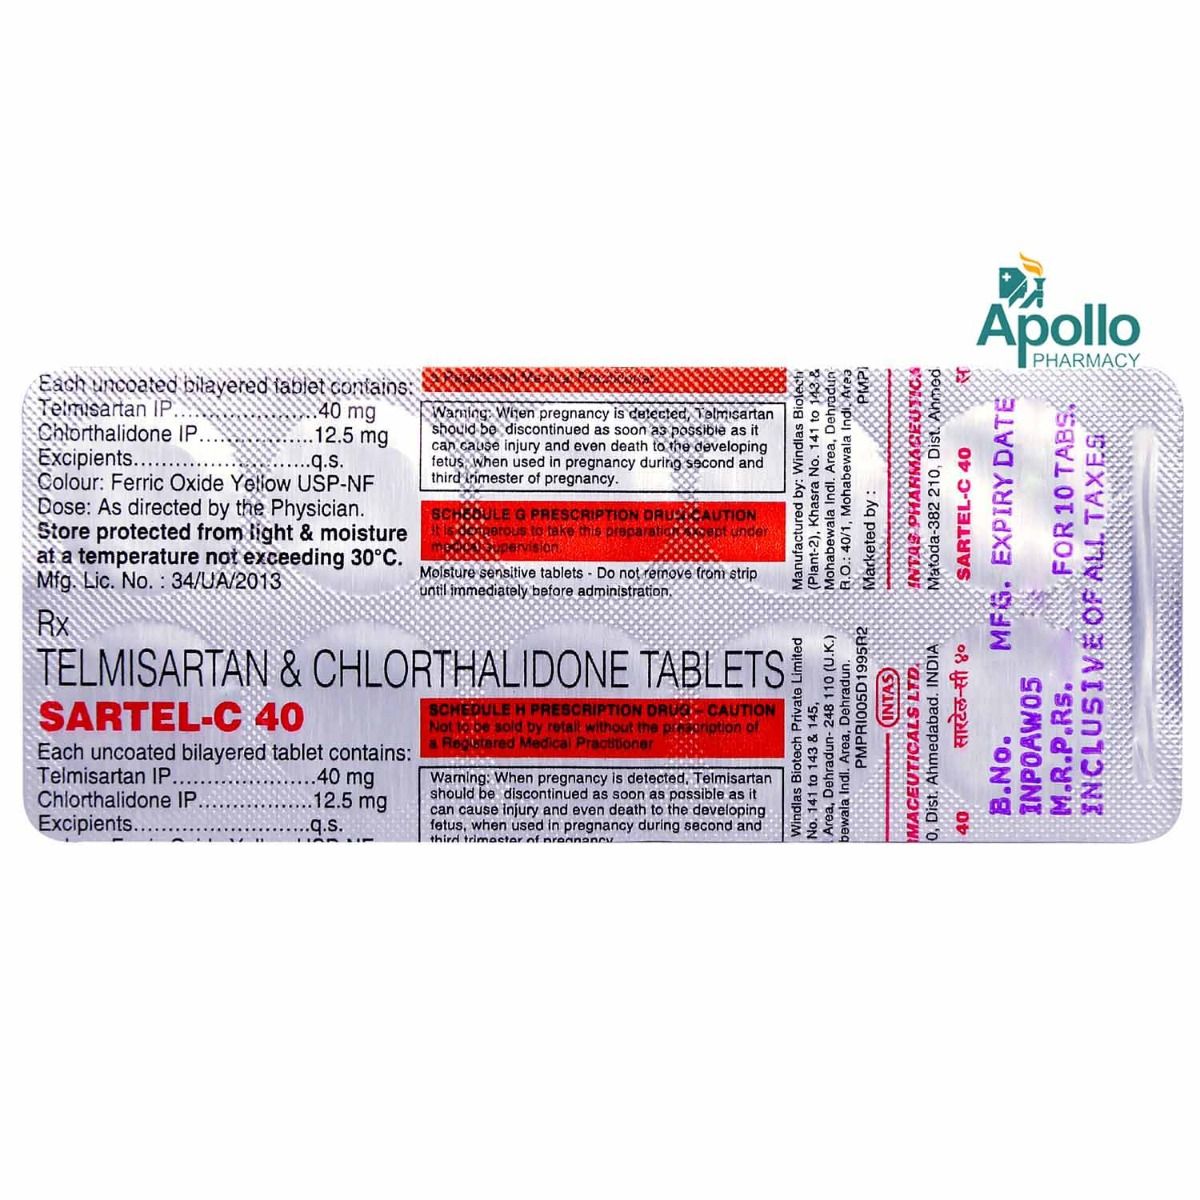 Sartel-C 40 Tablet 10's, Pack of 10 TABLETS